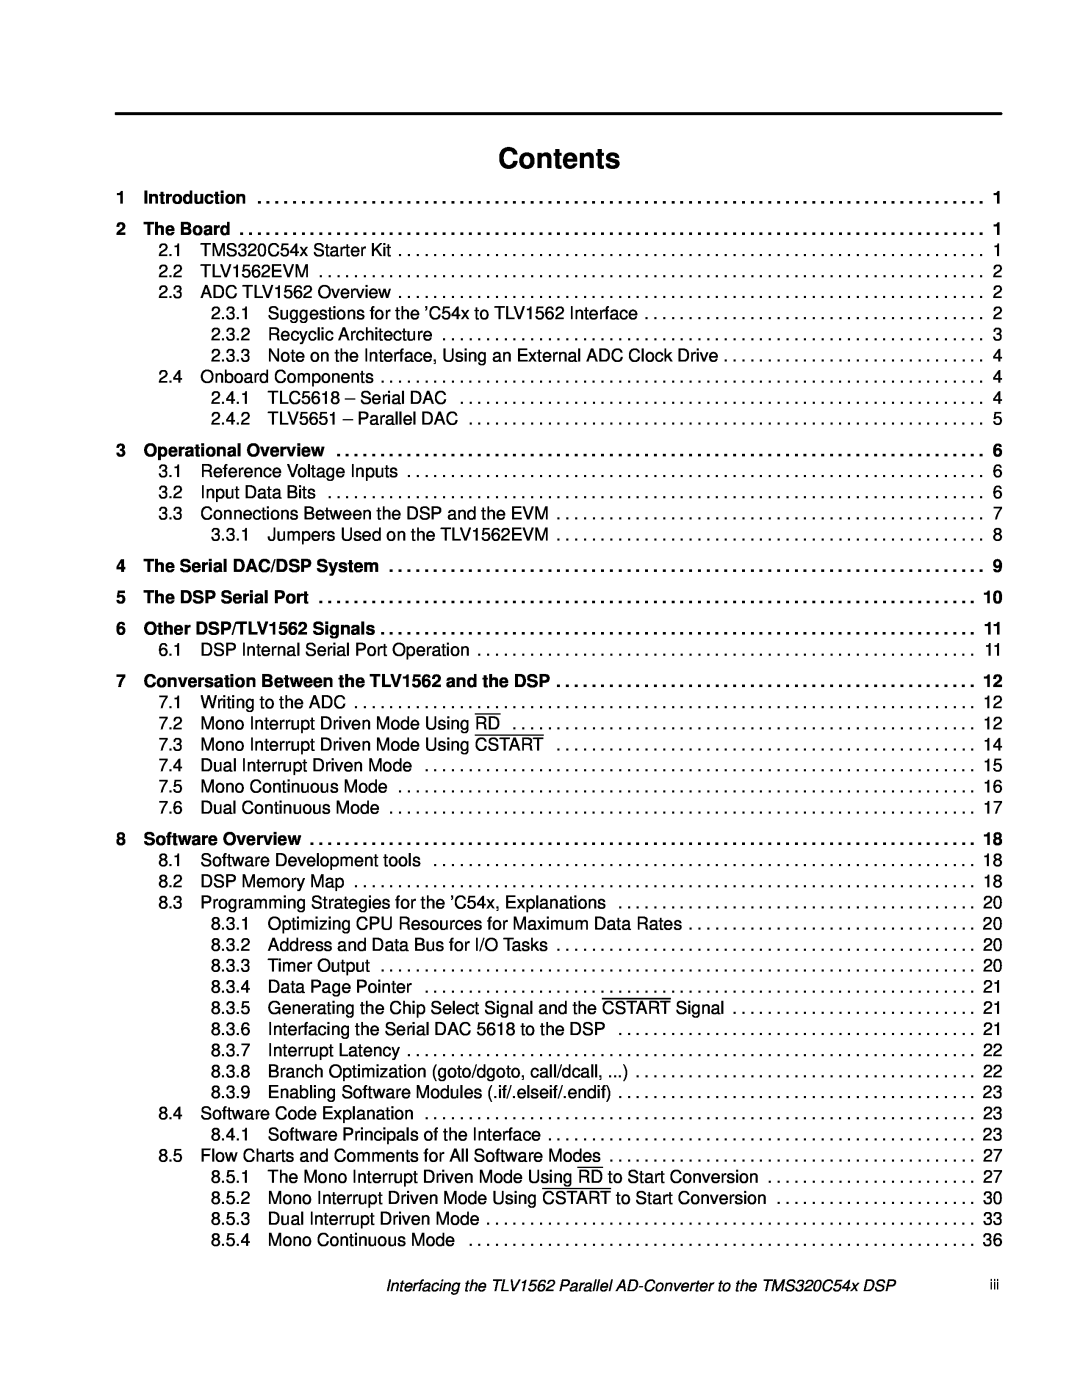 Texas Instruments TLV1562 manual Contents 